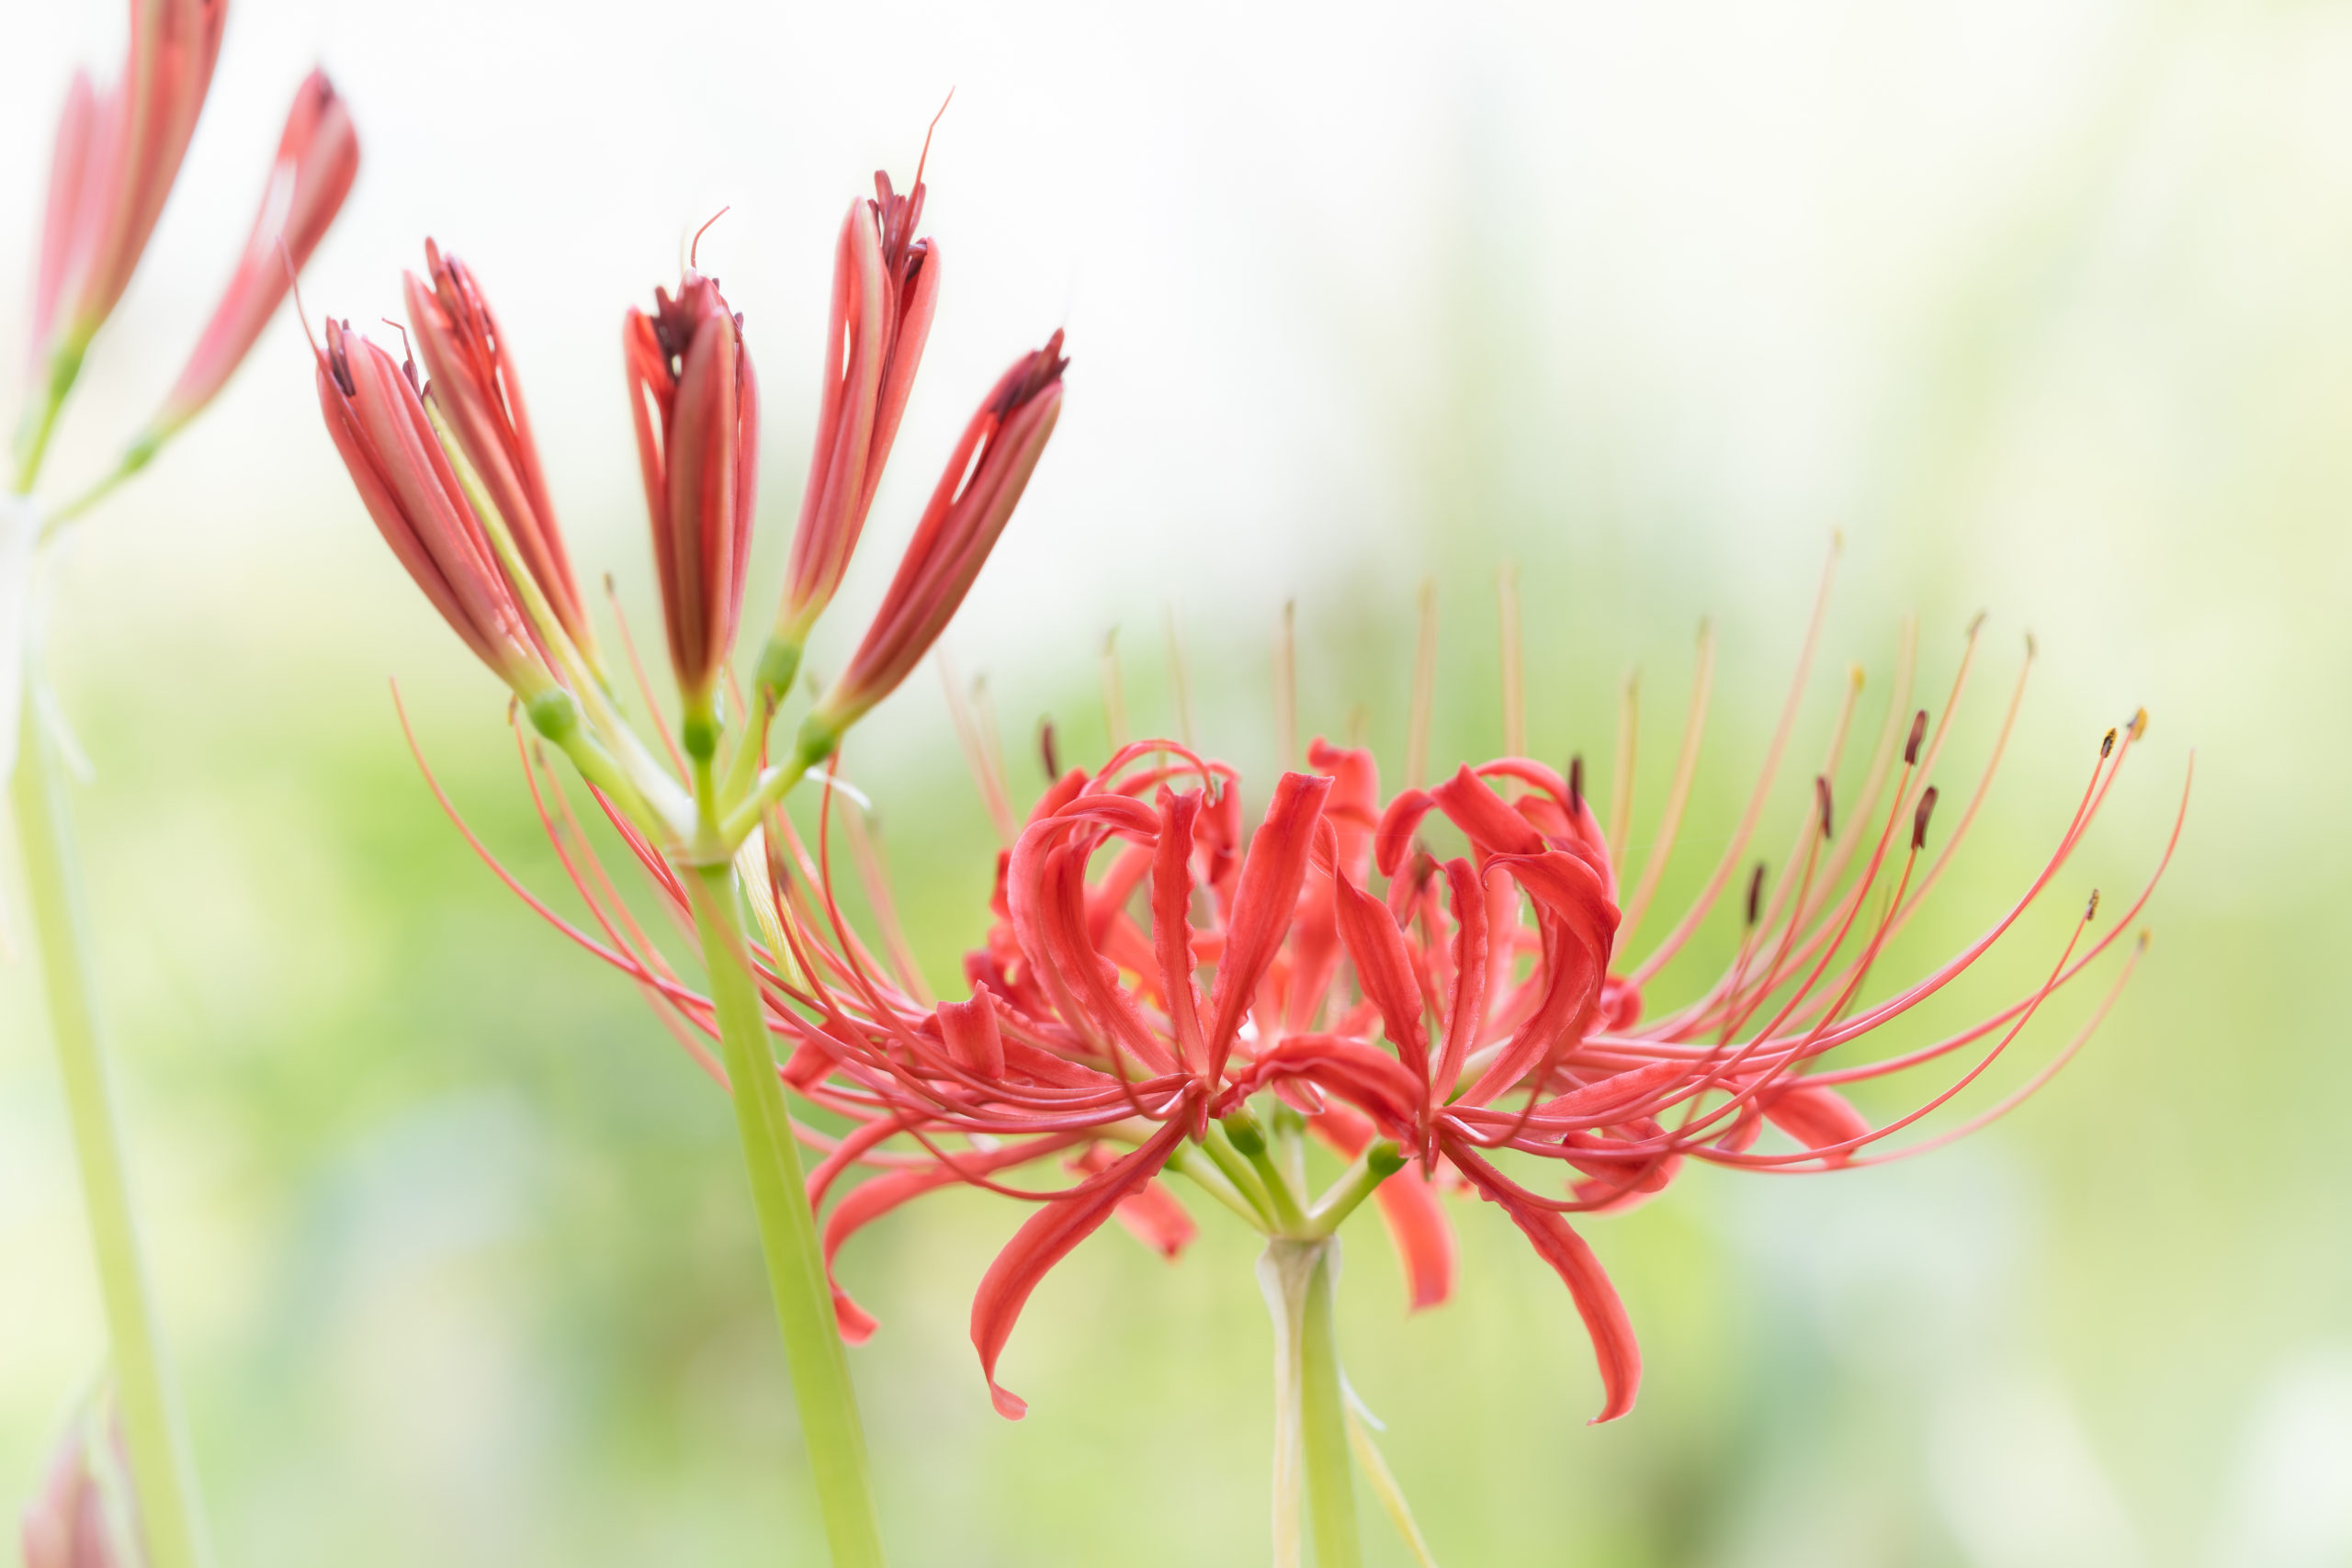 ヒガンバナ「彼岸花」（Red spider lily）近景ハイキーソフト